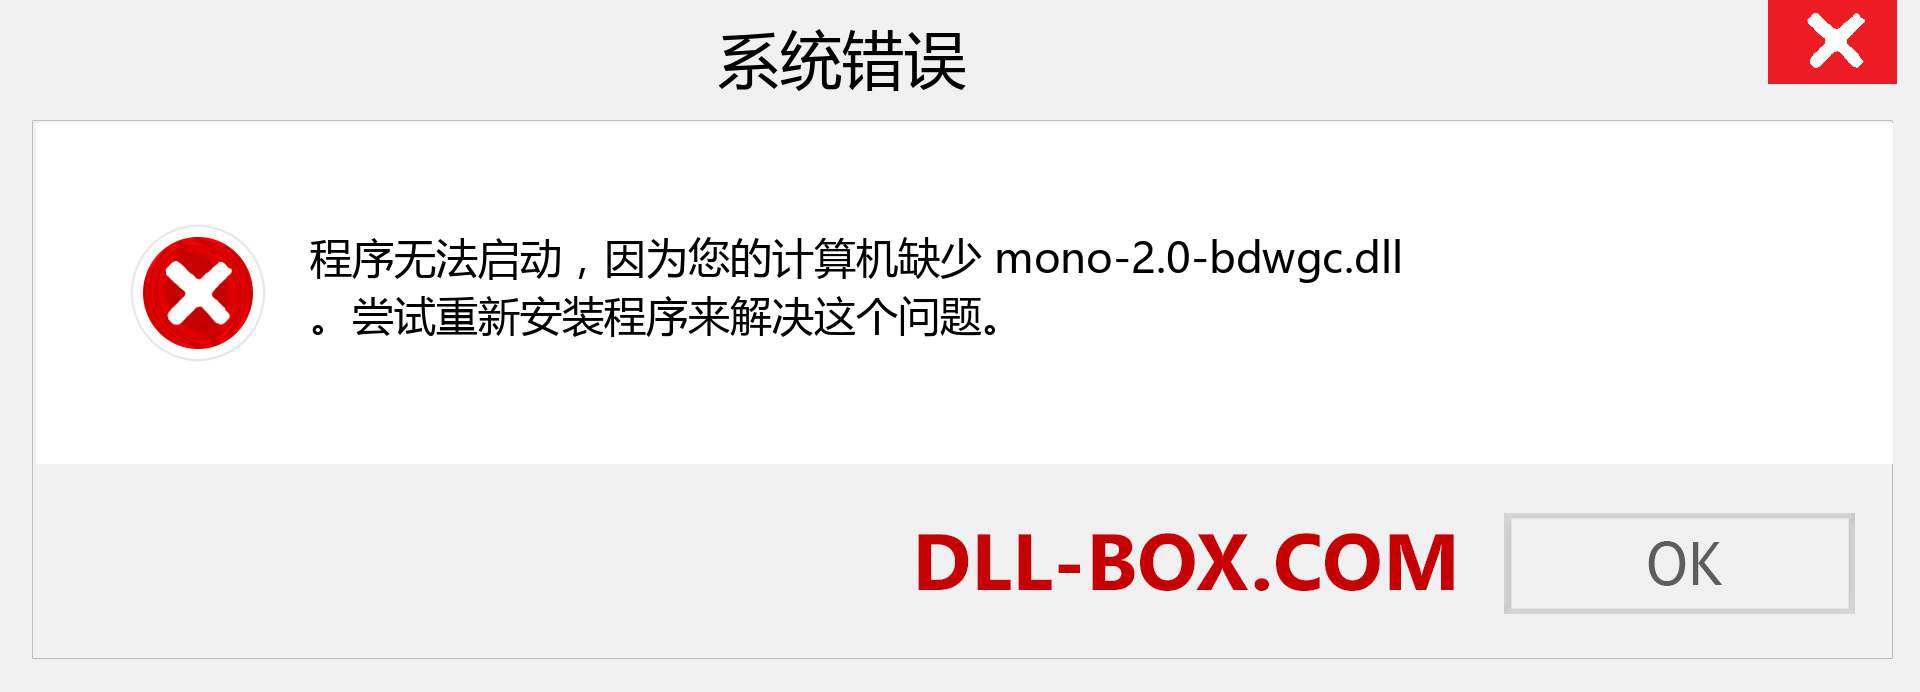 mono-2.0-bdwgc.dll 文件丢失？。 适用于 Windows 7、8、10 的下载 - 修复 Windows、照片、图像上的 mono-2.0-bdwgc dll 丢失错误